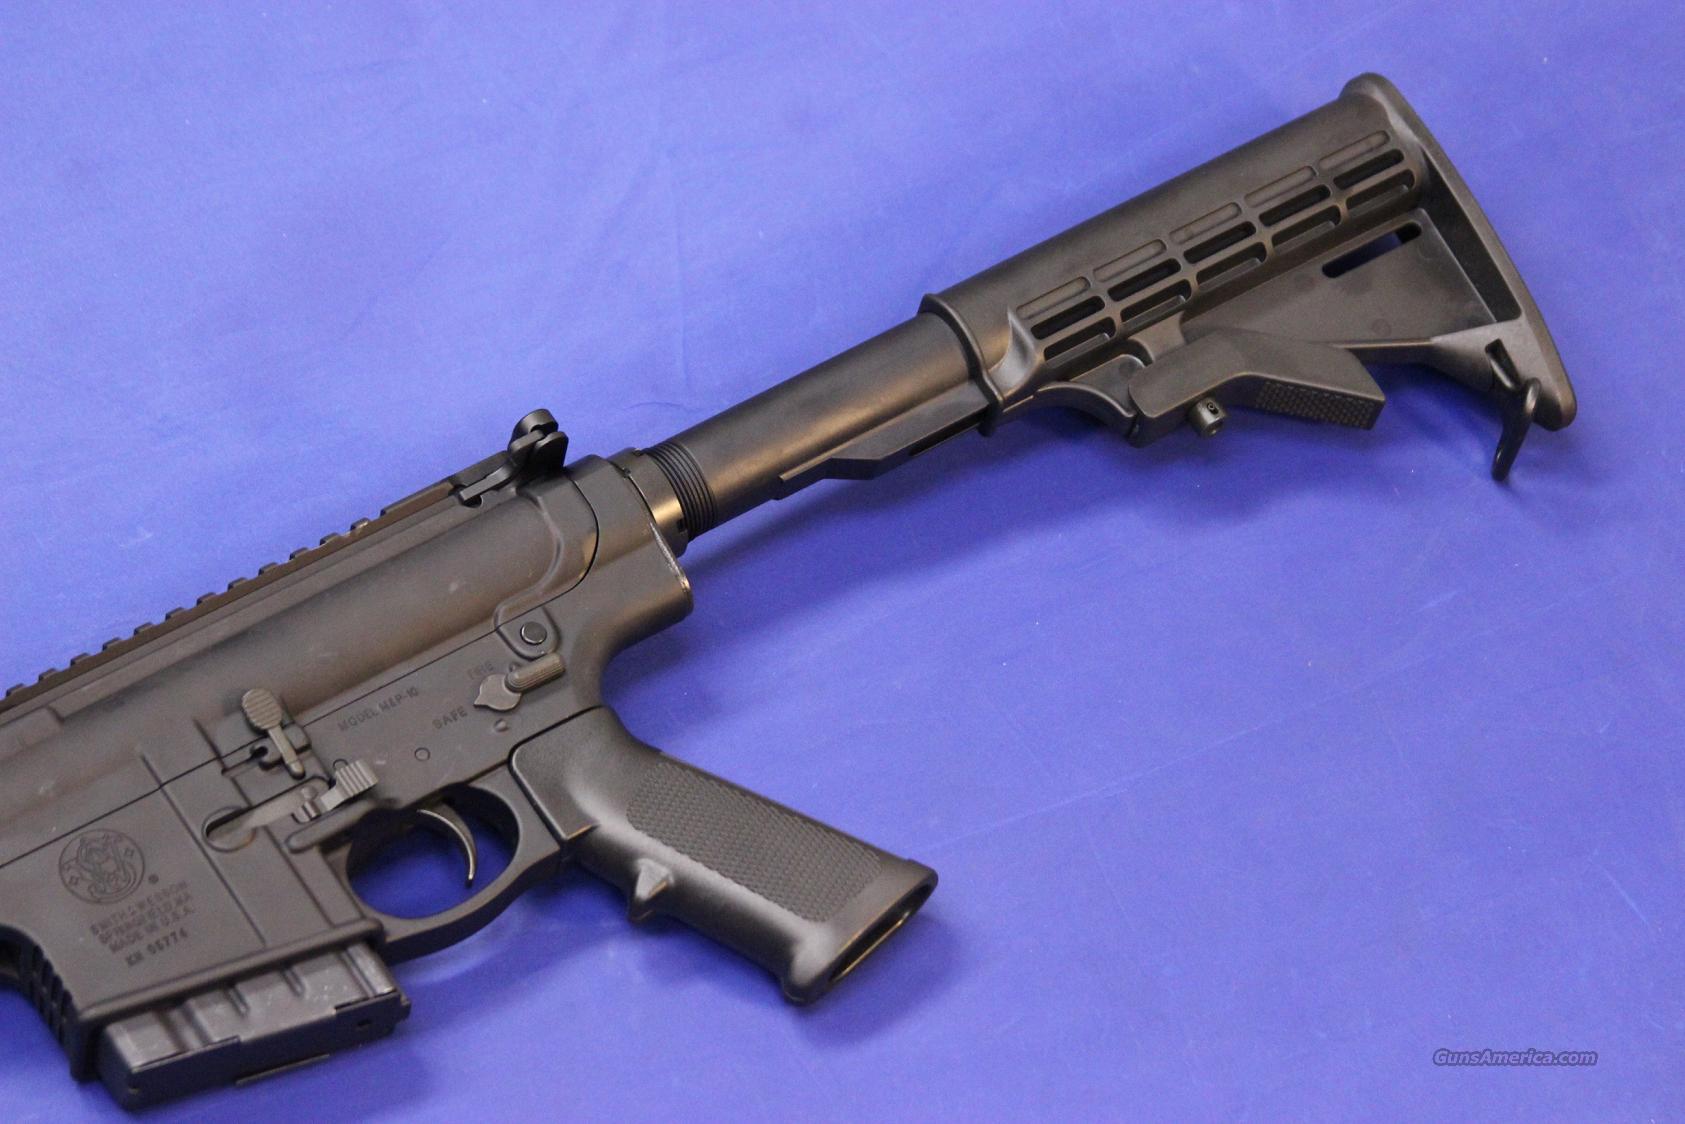 SMITH & WESSON M&P 10 AR-10 .308 WI... for sale at Gunsamerica.com ...